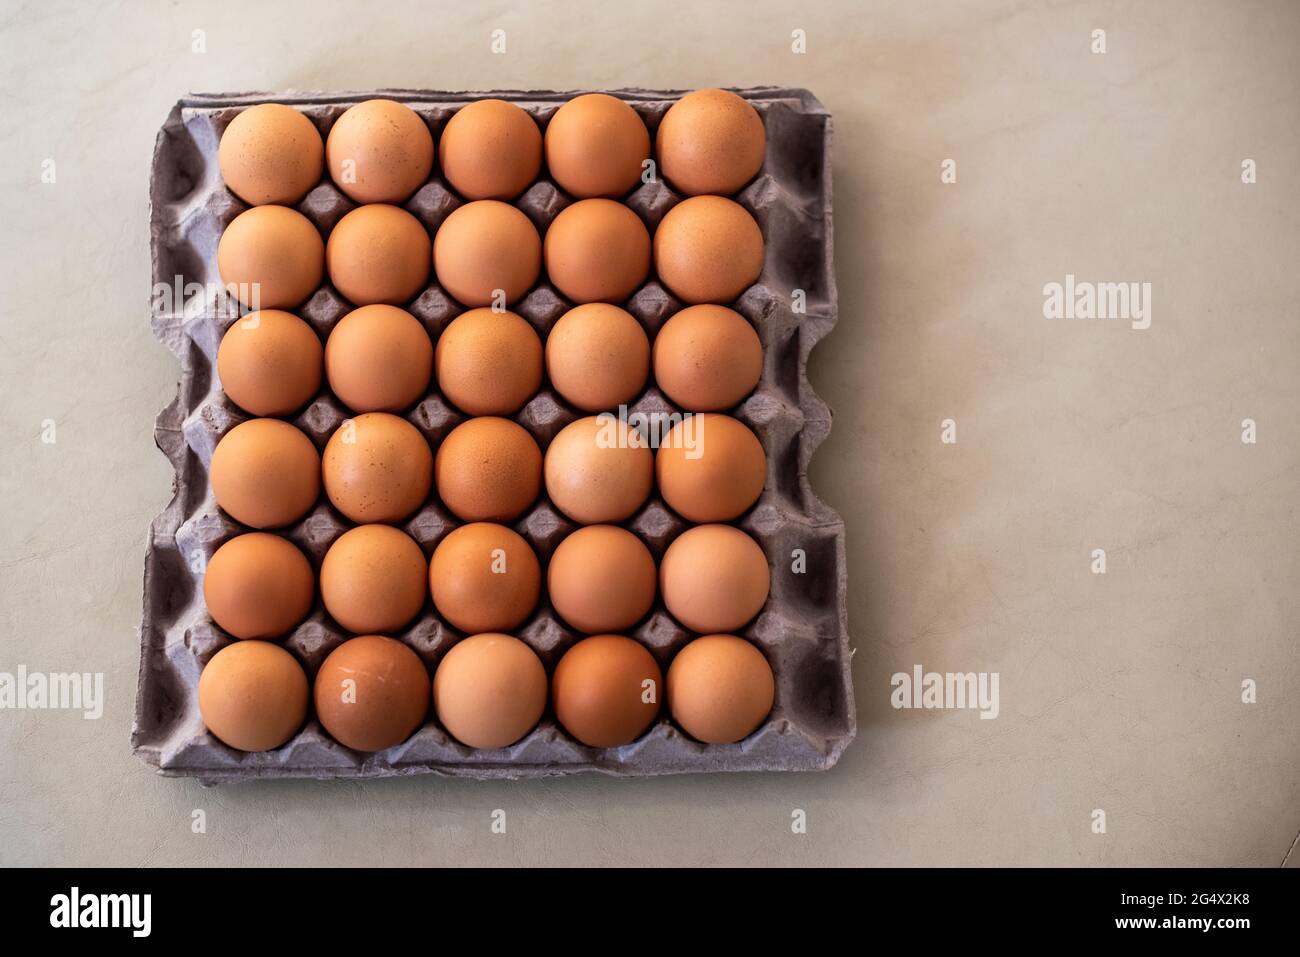 huevos de gallina frescos en casa. Stock Photo